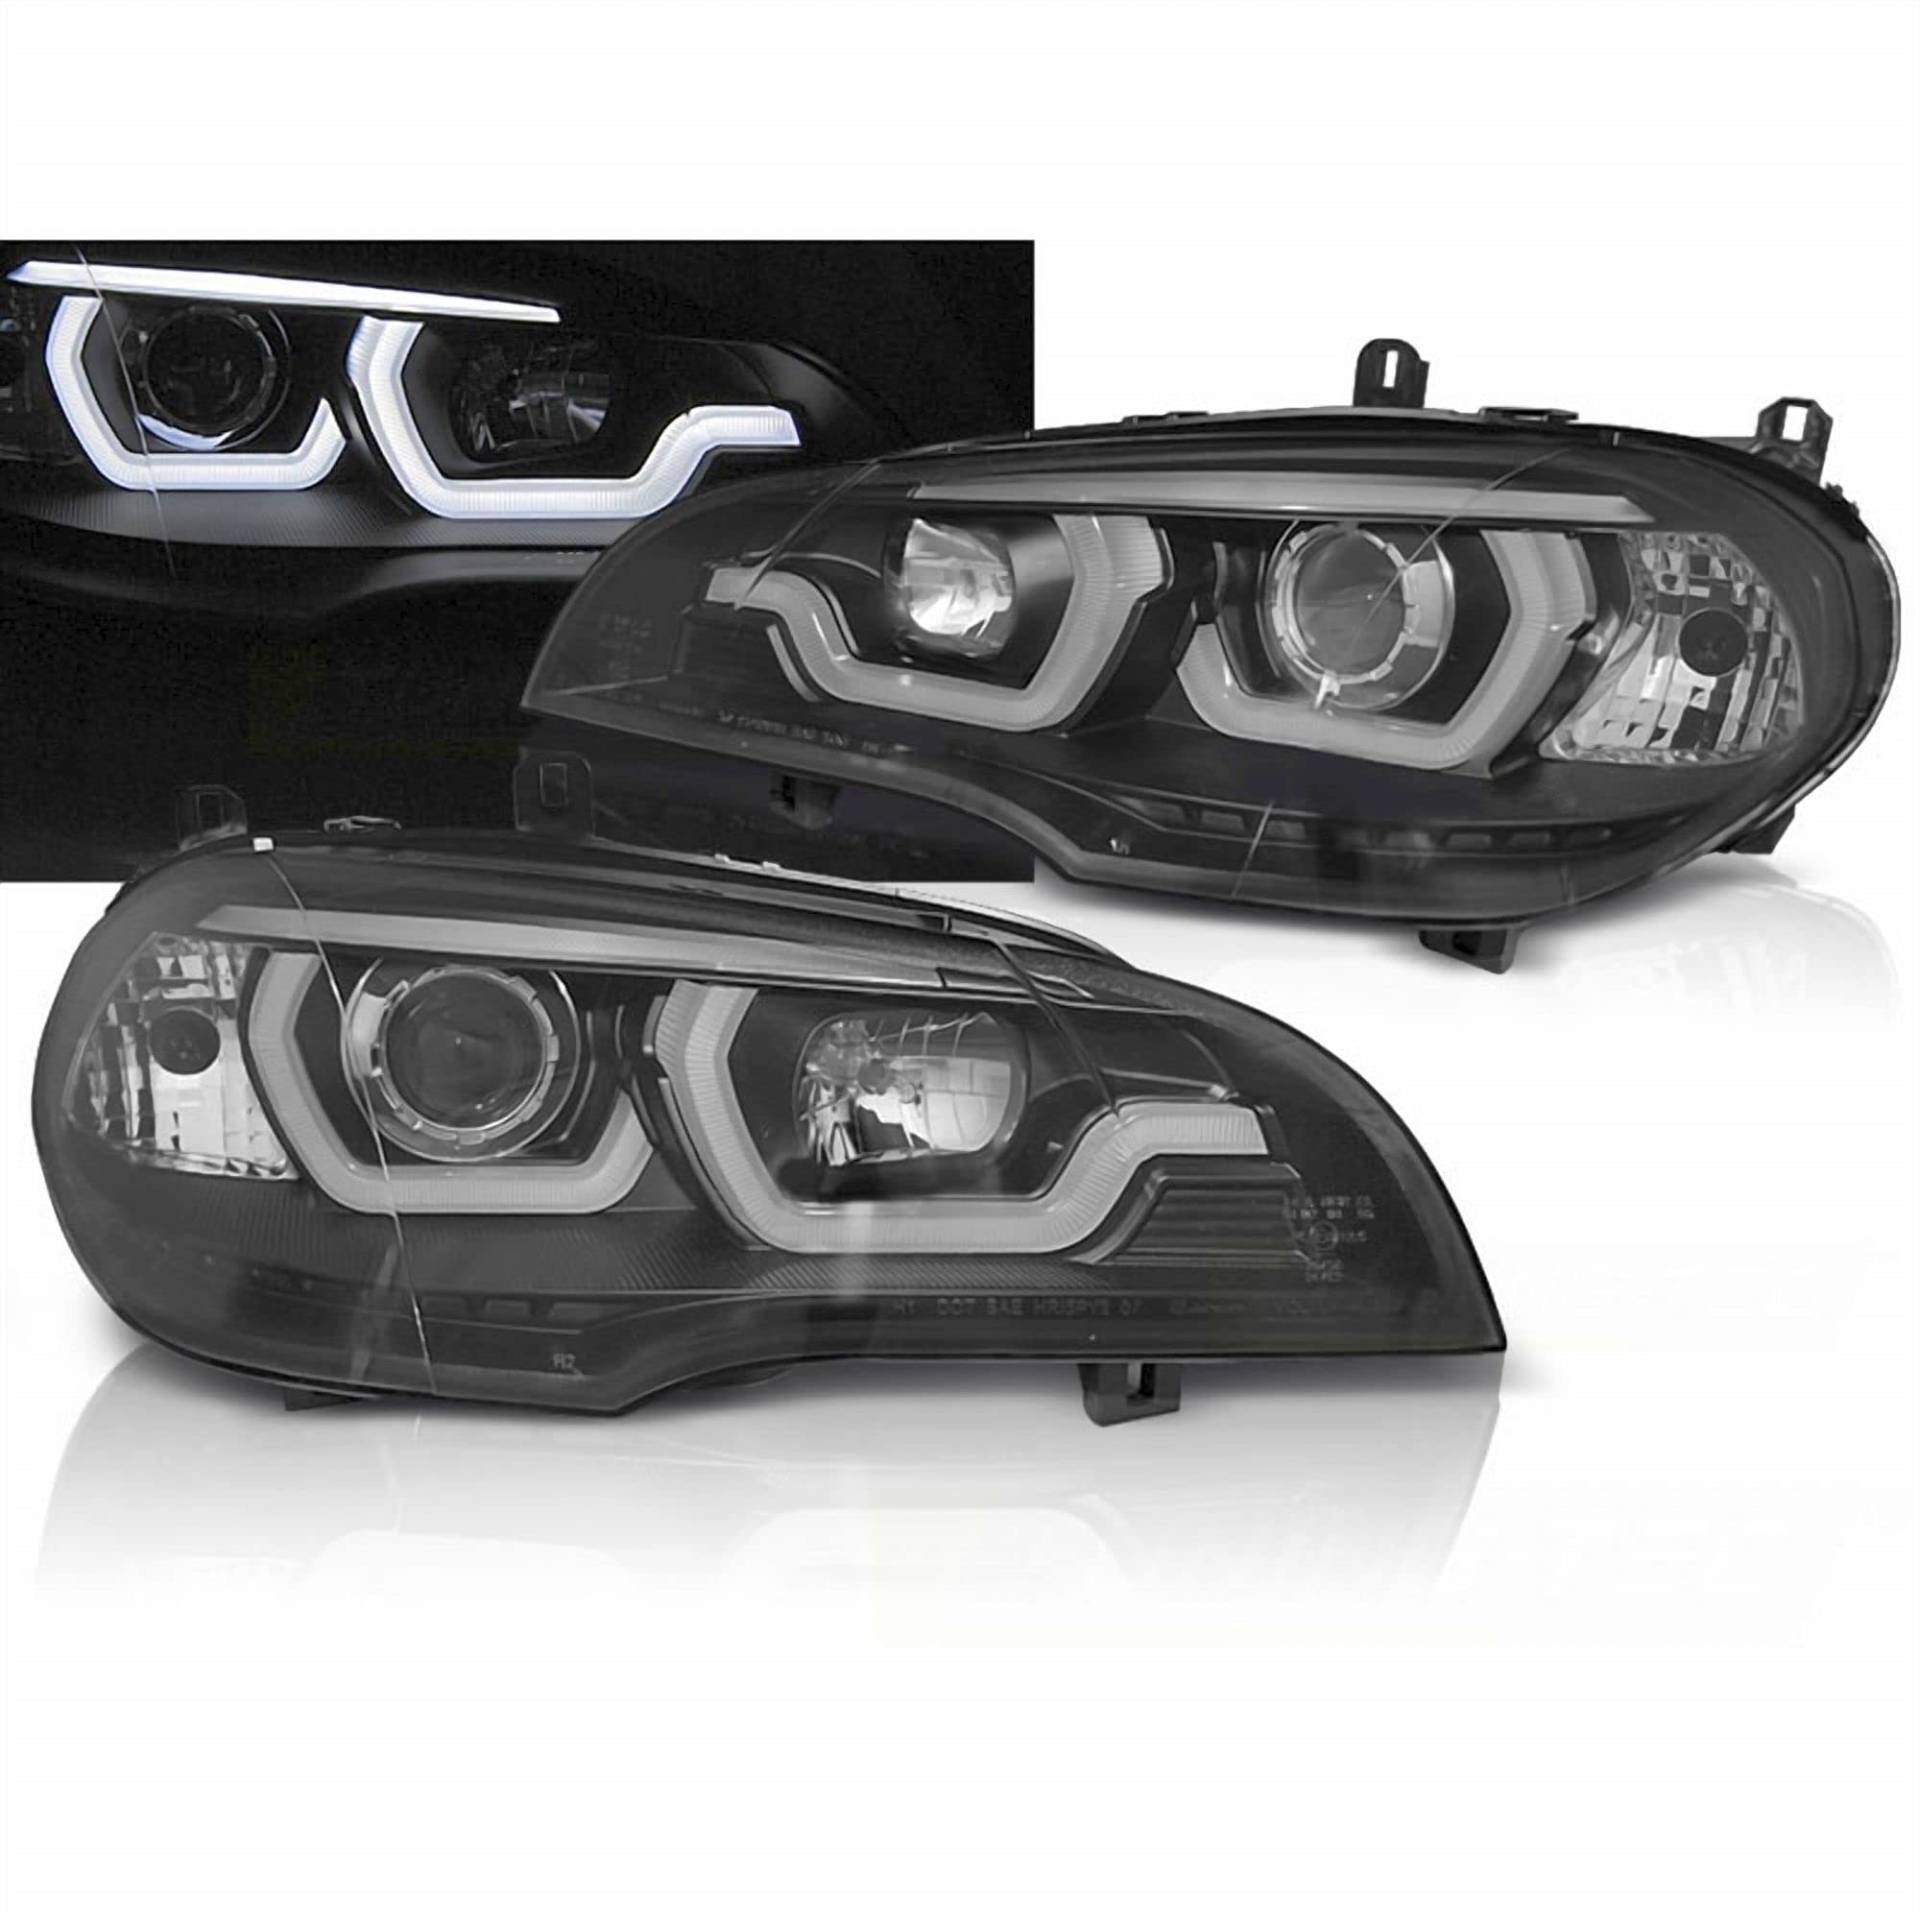 LED Tagfahrlicht 3D Angel Eyes Scheinwerfer in schwarz passend für BMW X5 E70 2007-2013 Halogen von CR-Lights